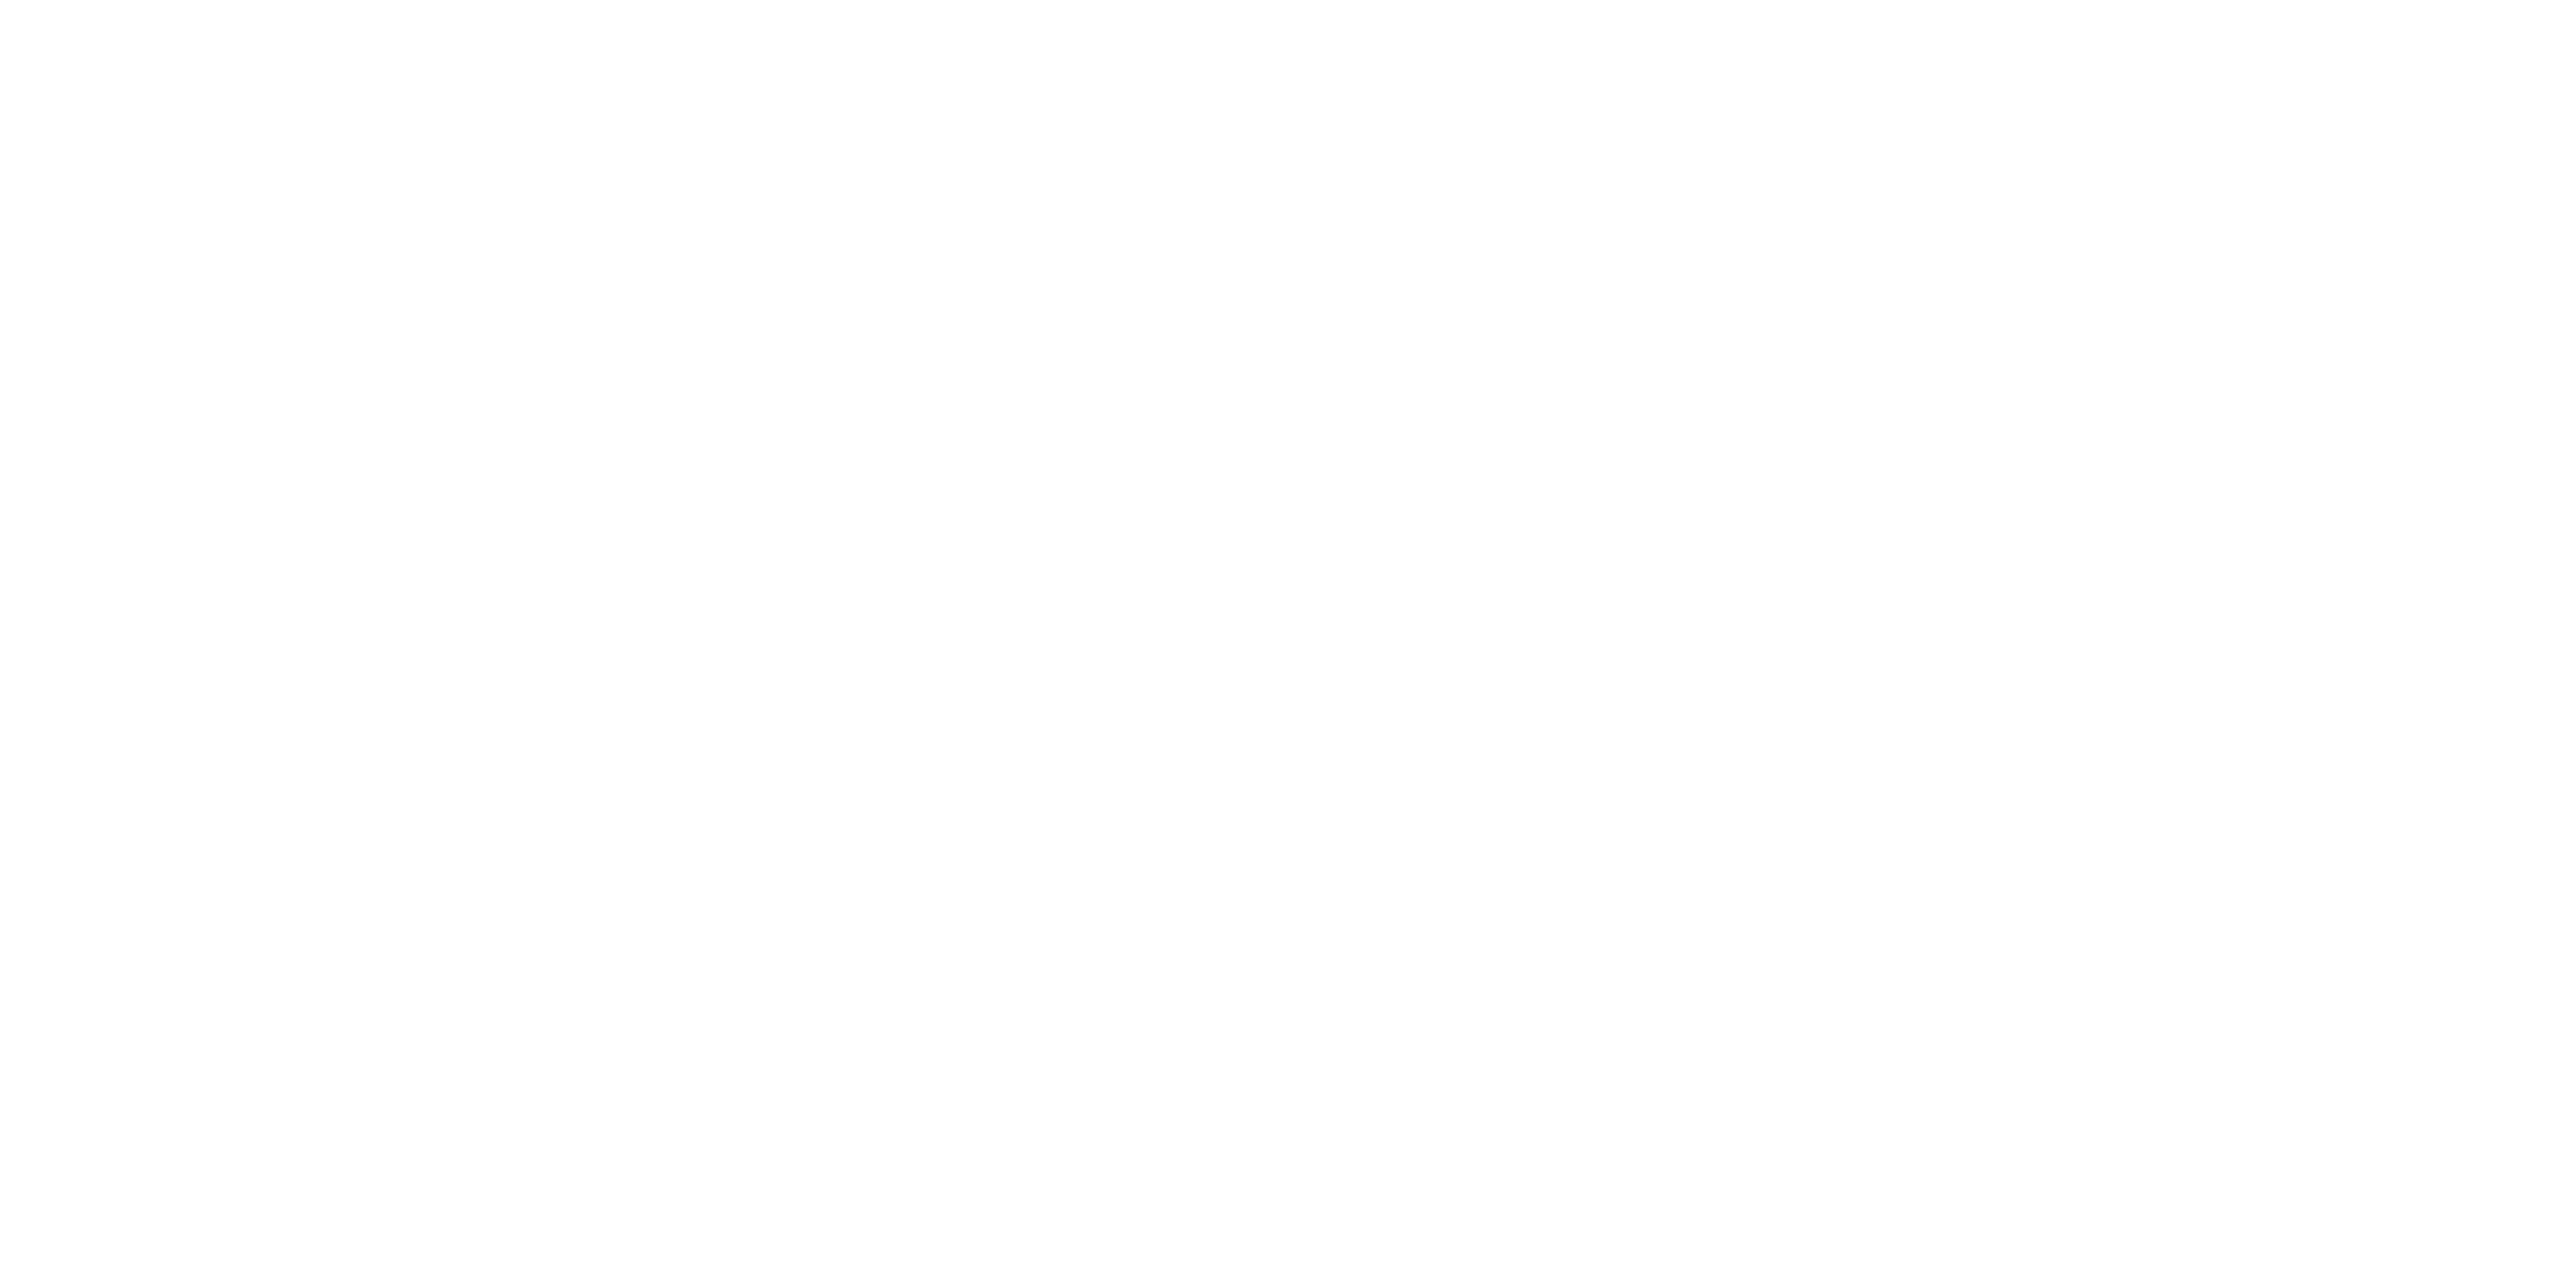 VERZEX™ – Digital Services Network